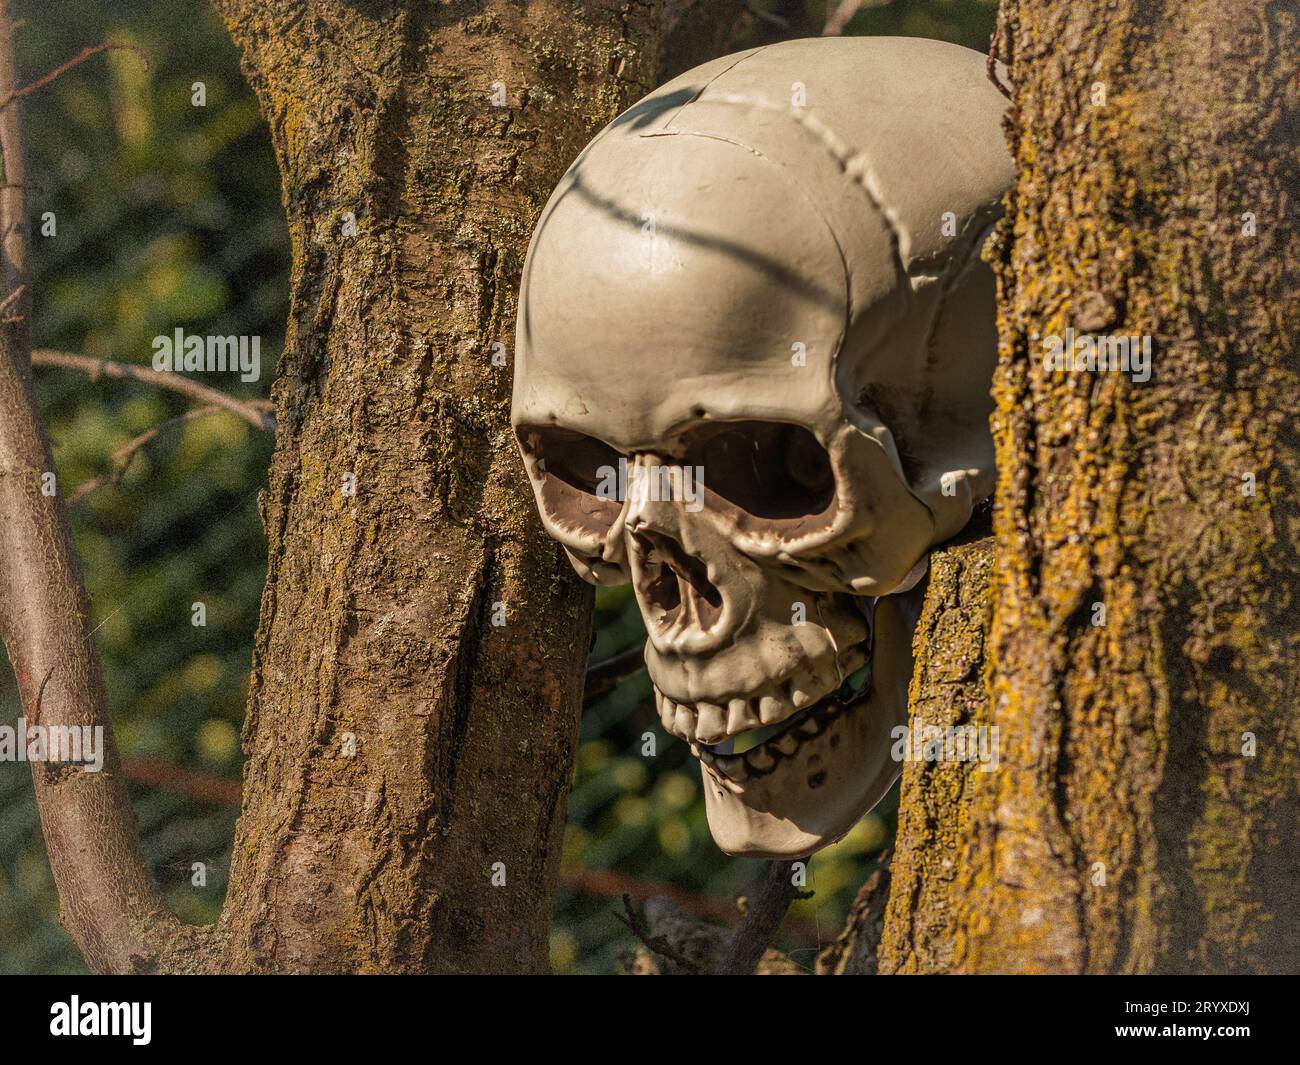 Gruseliges Halloween-Dekor: Plastikschädel in unheimlichem Gras, perfekt für gespenstische Hausatmosphäre Stockfoto